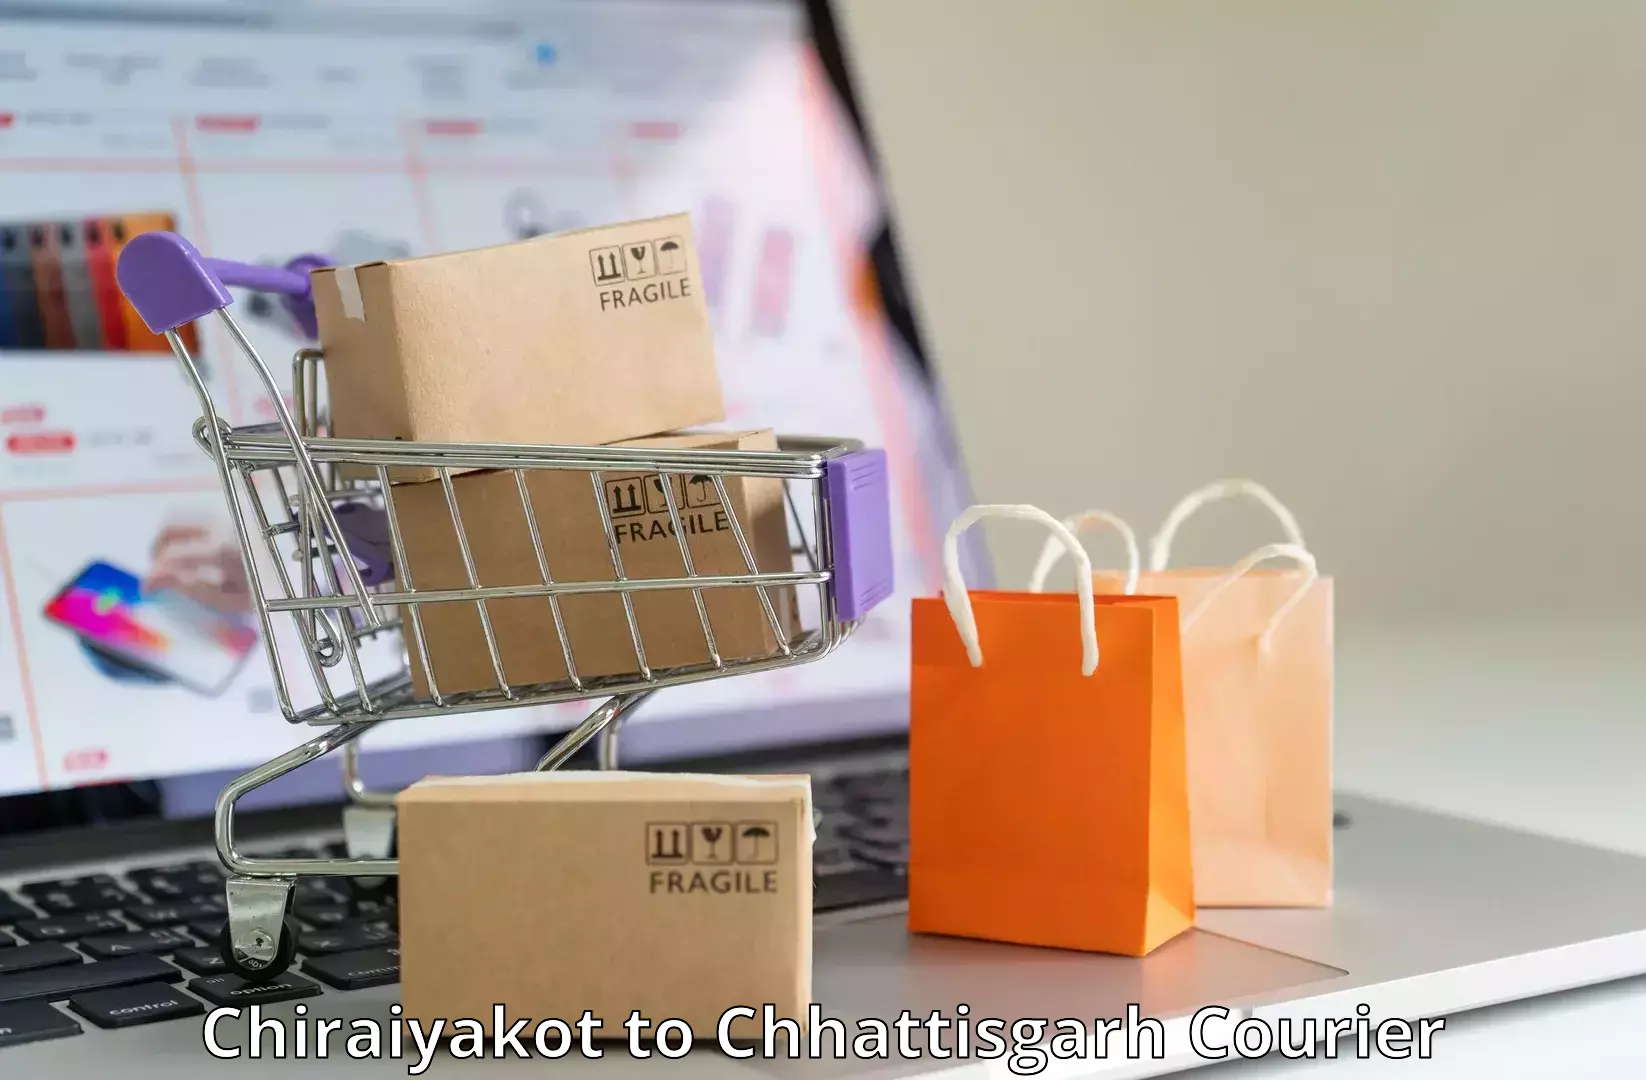 Supply chain delivery Chiraiyakot to Chhattisgarh